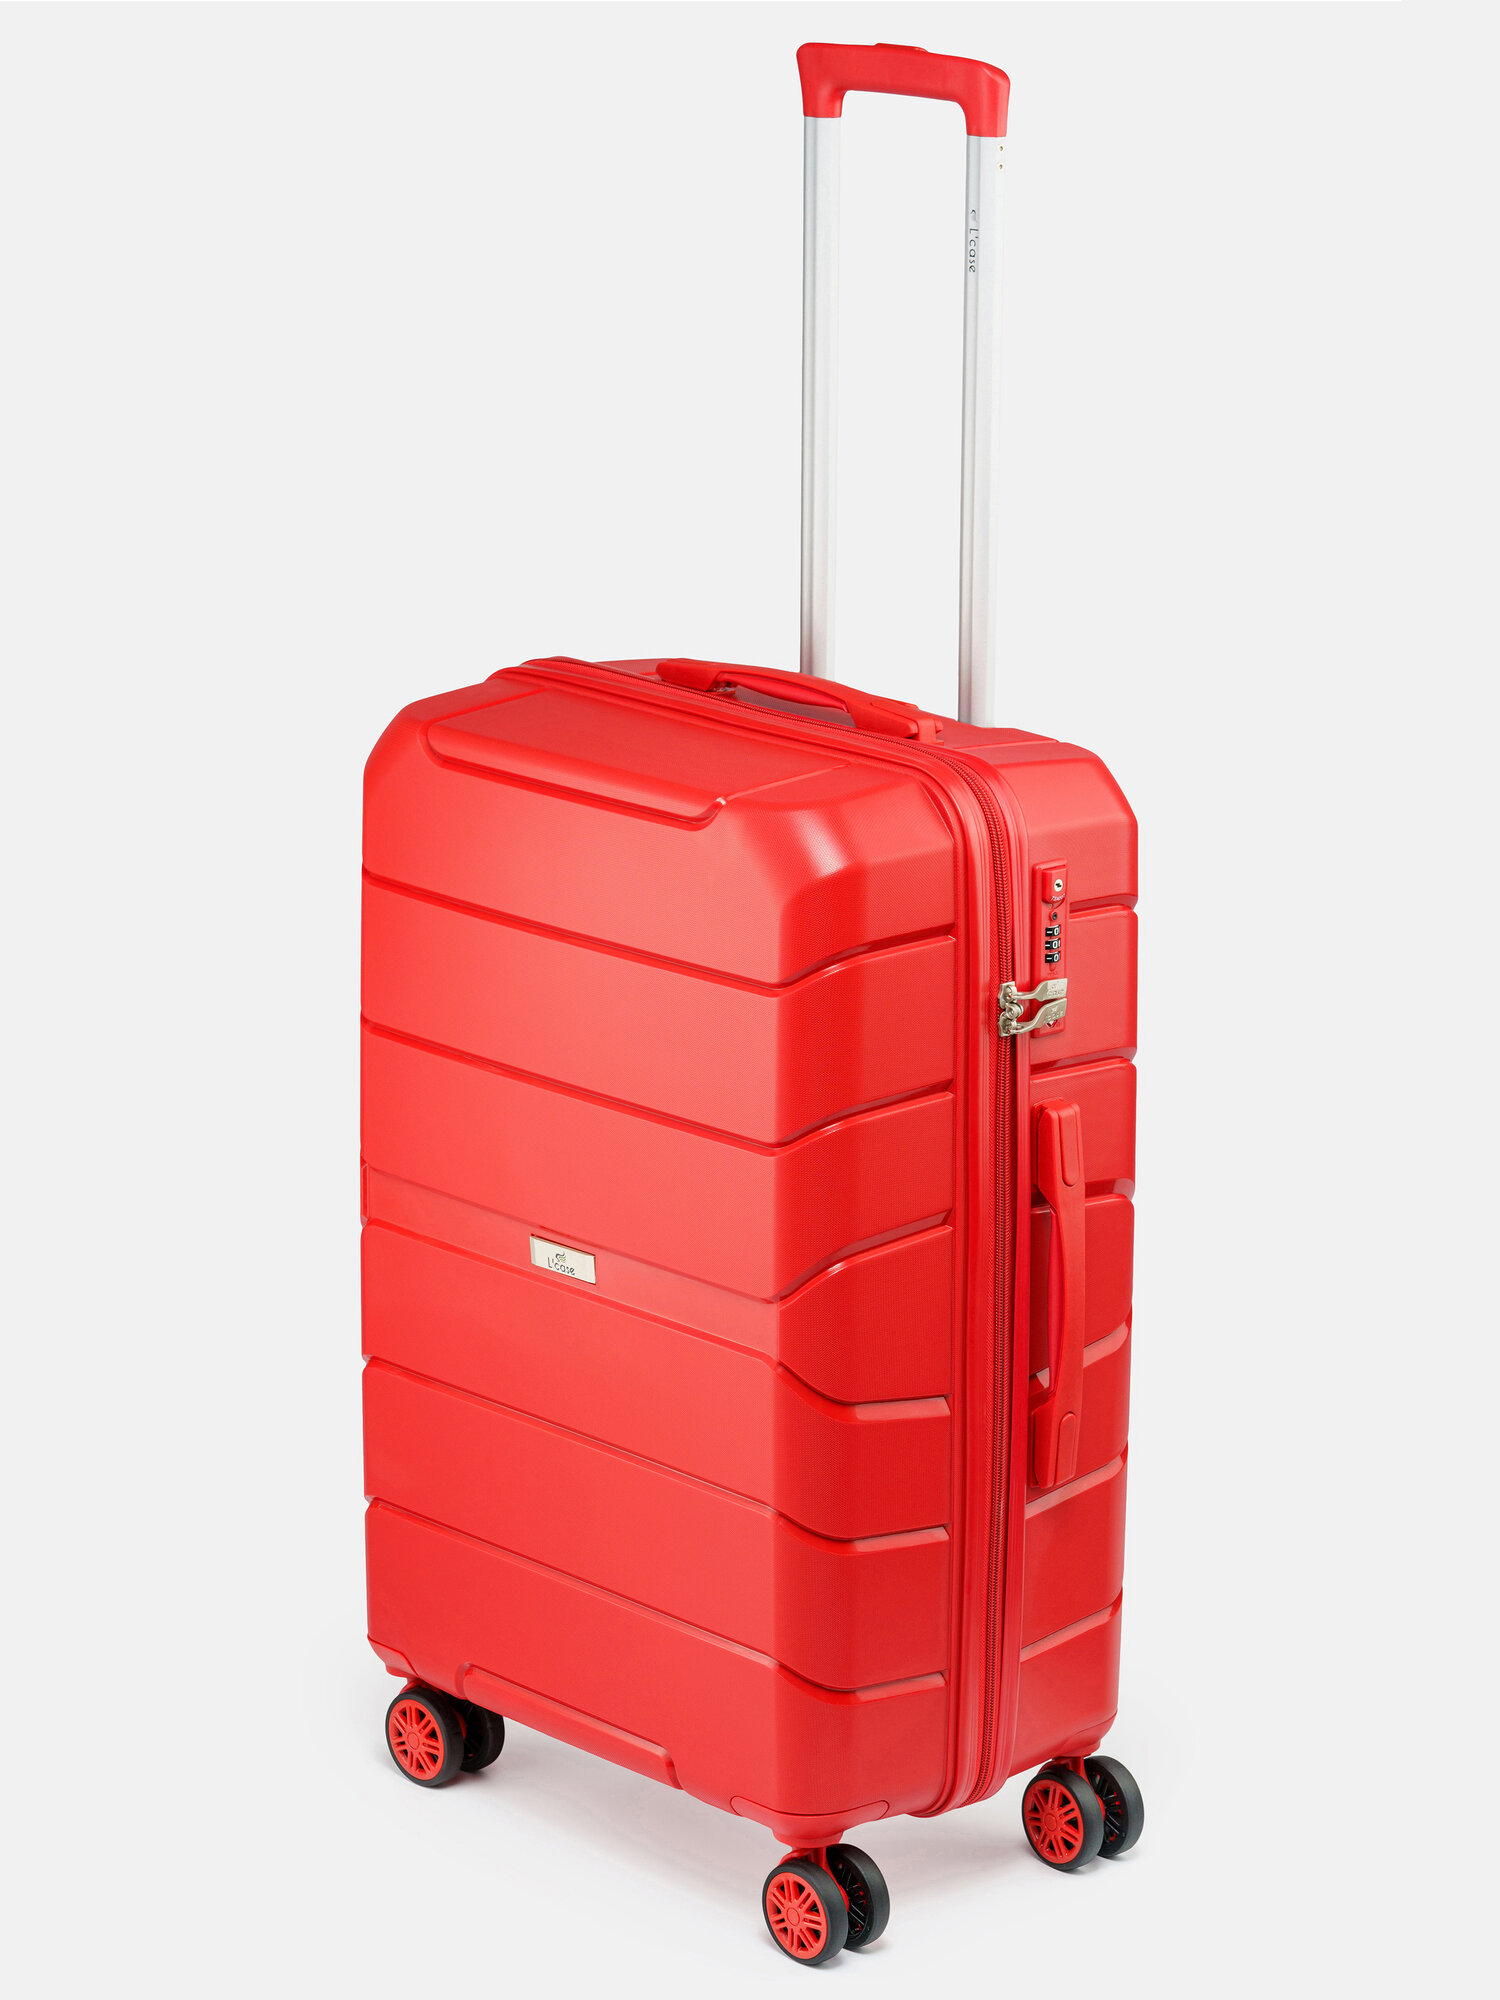 Чемодан на колесах Lcase Singapore, Красный. Средний М. Дорожный чемодан на колесиках для путешествий и поездок.